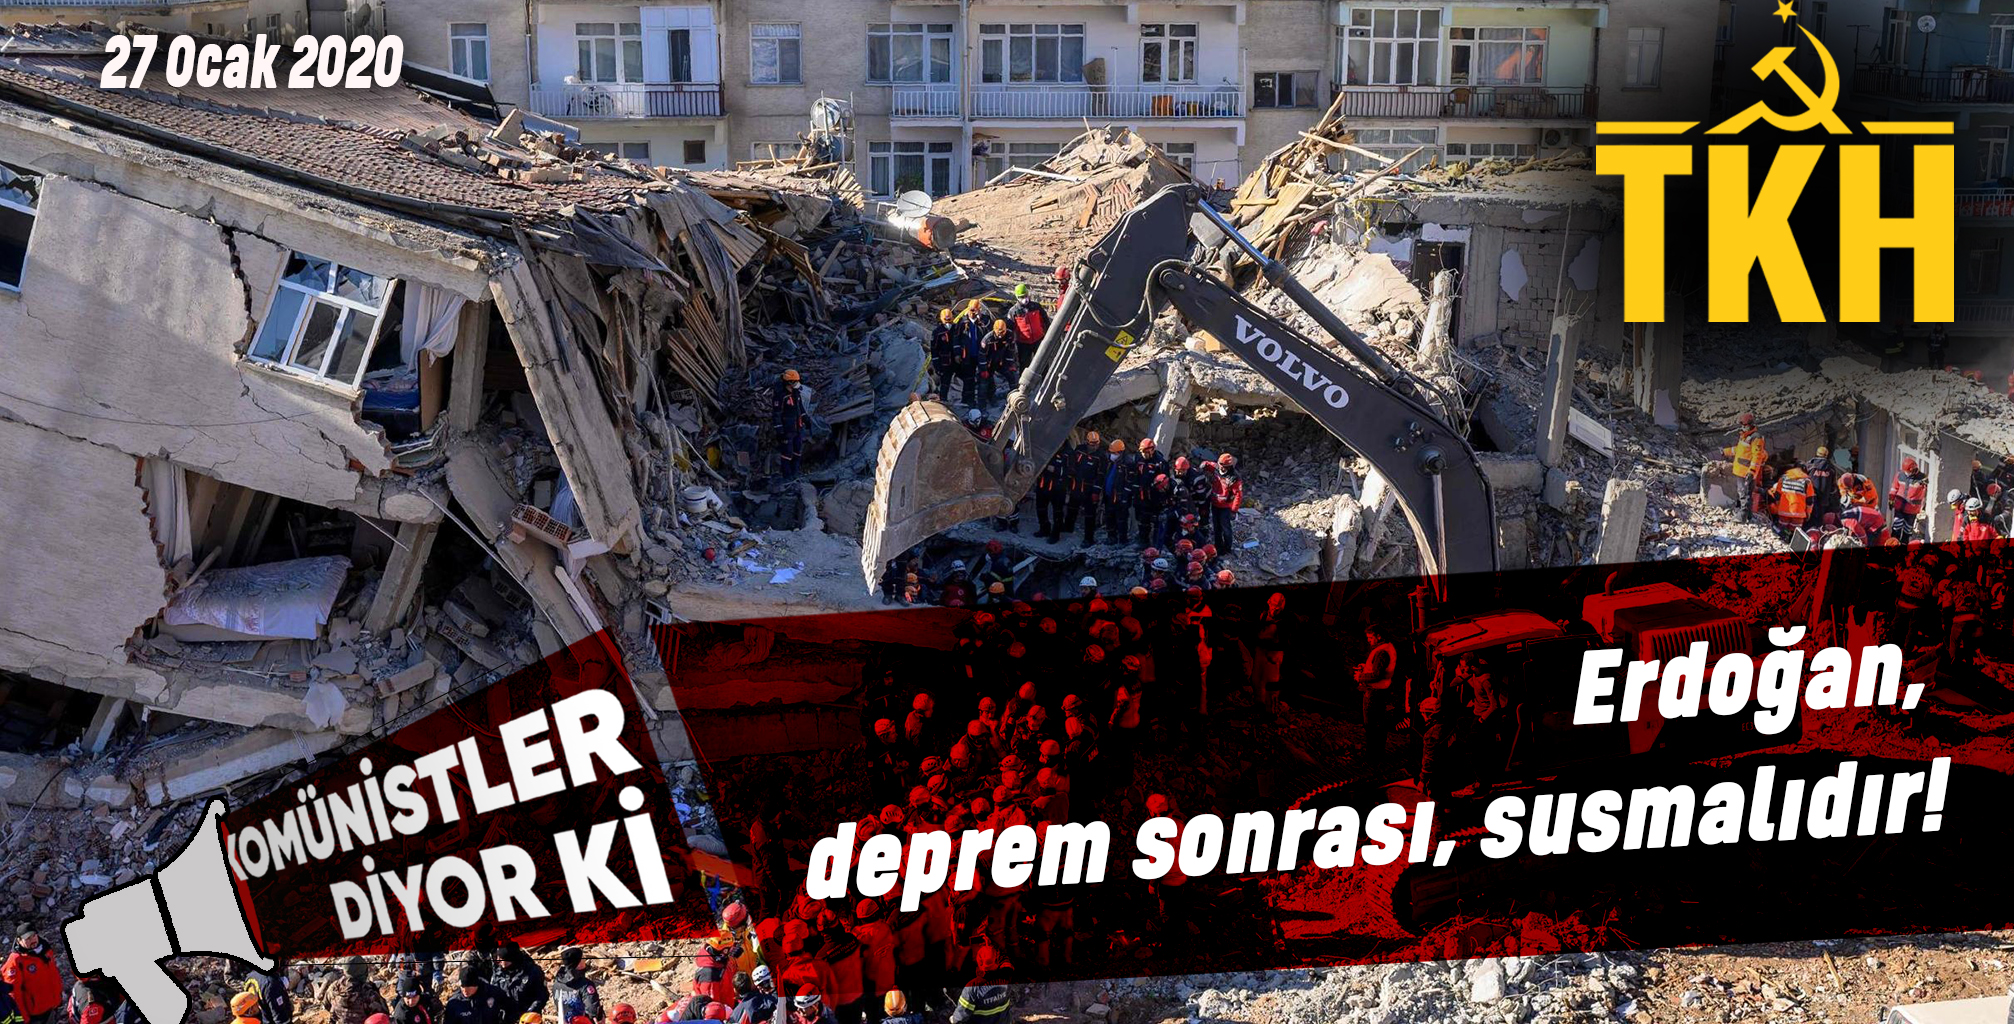 KOMÜNİSTLER DİYOR Kİ: Erdoğan, deprem sonrası, susmalıdır